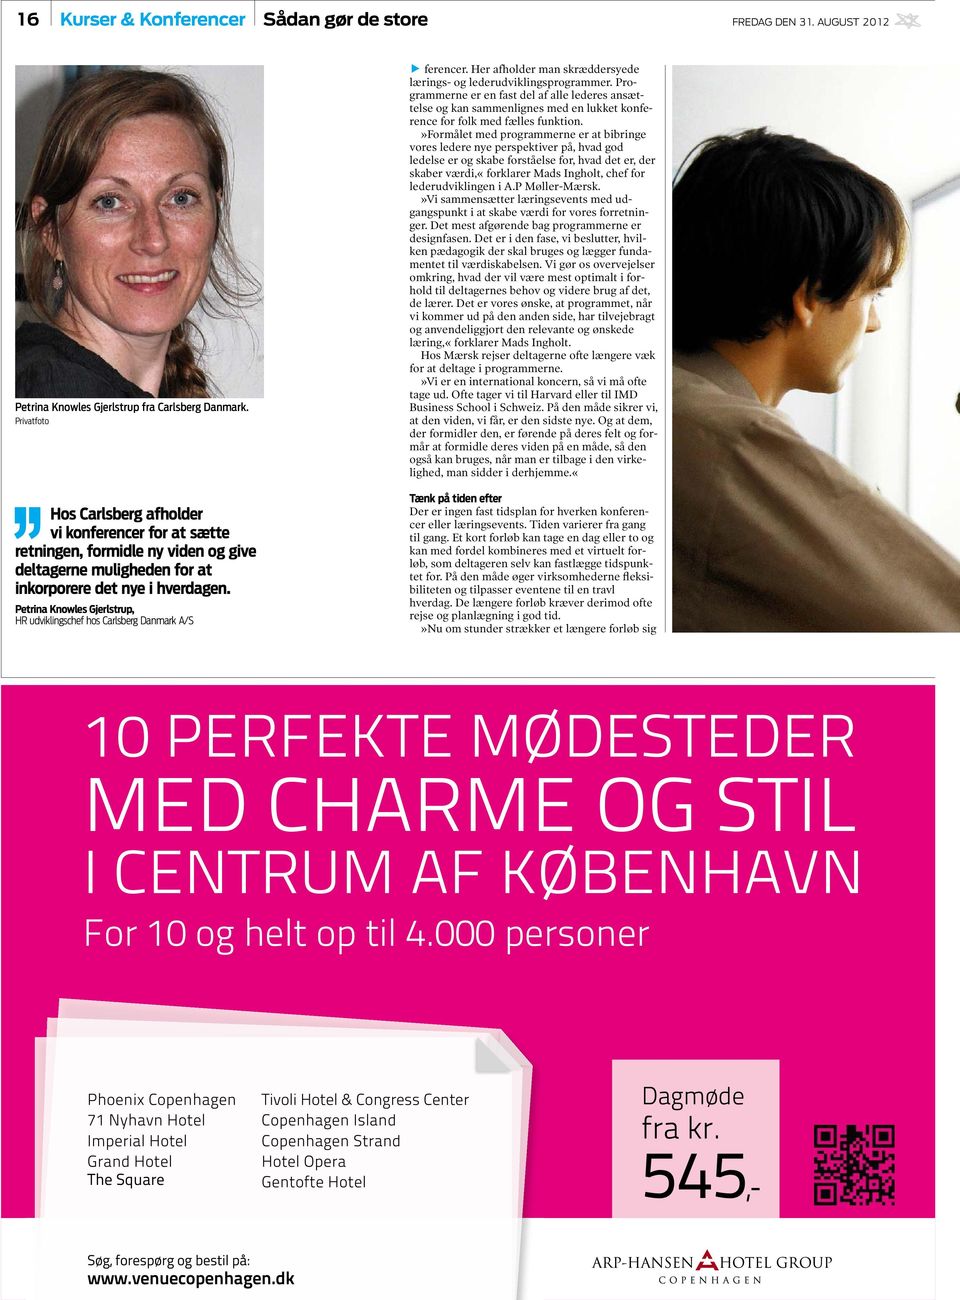 Petrina Knowles Gjerlstrup, HR udviklingschef hos Carlsberg Danmark A/S E ferencer. Her afholder man skræddersyede lærings- og lederudviklingsprogrammer.